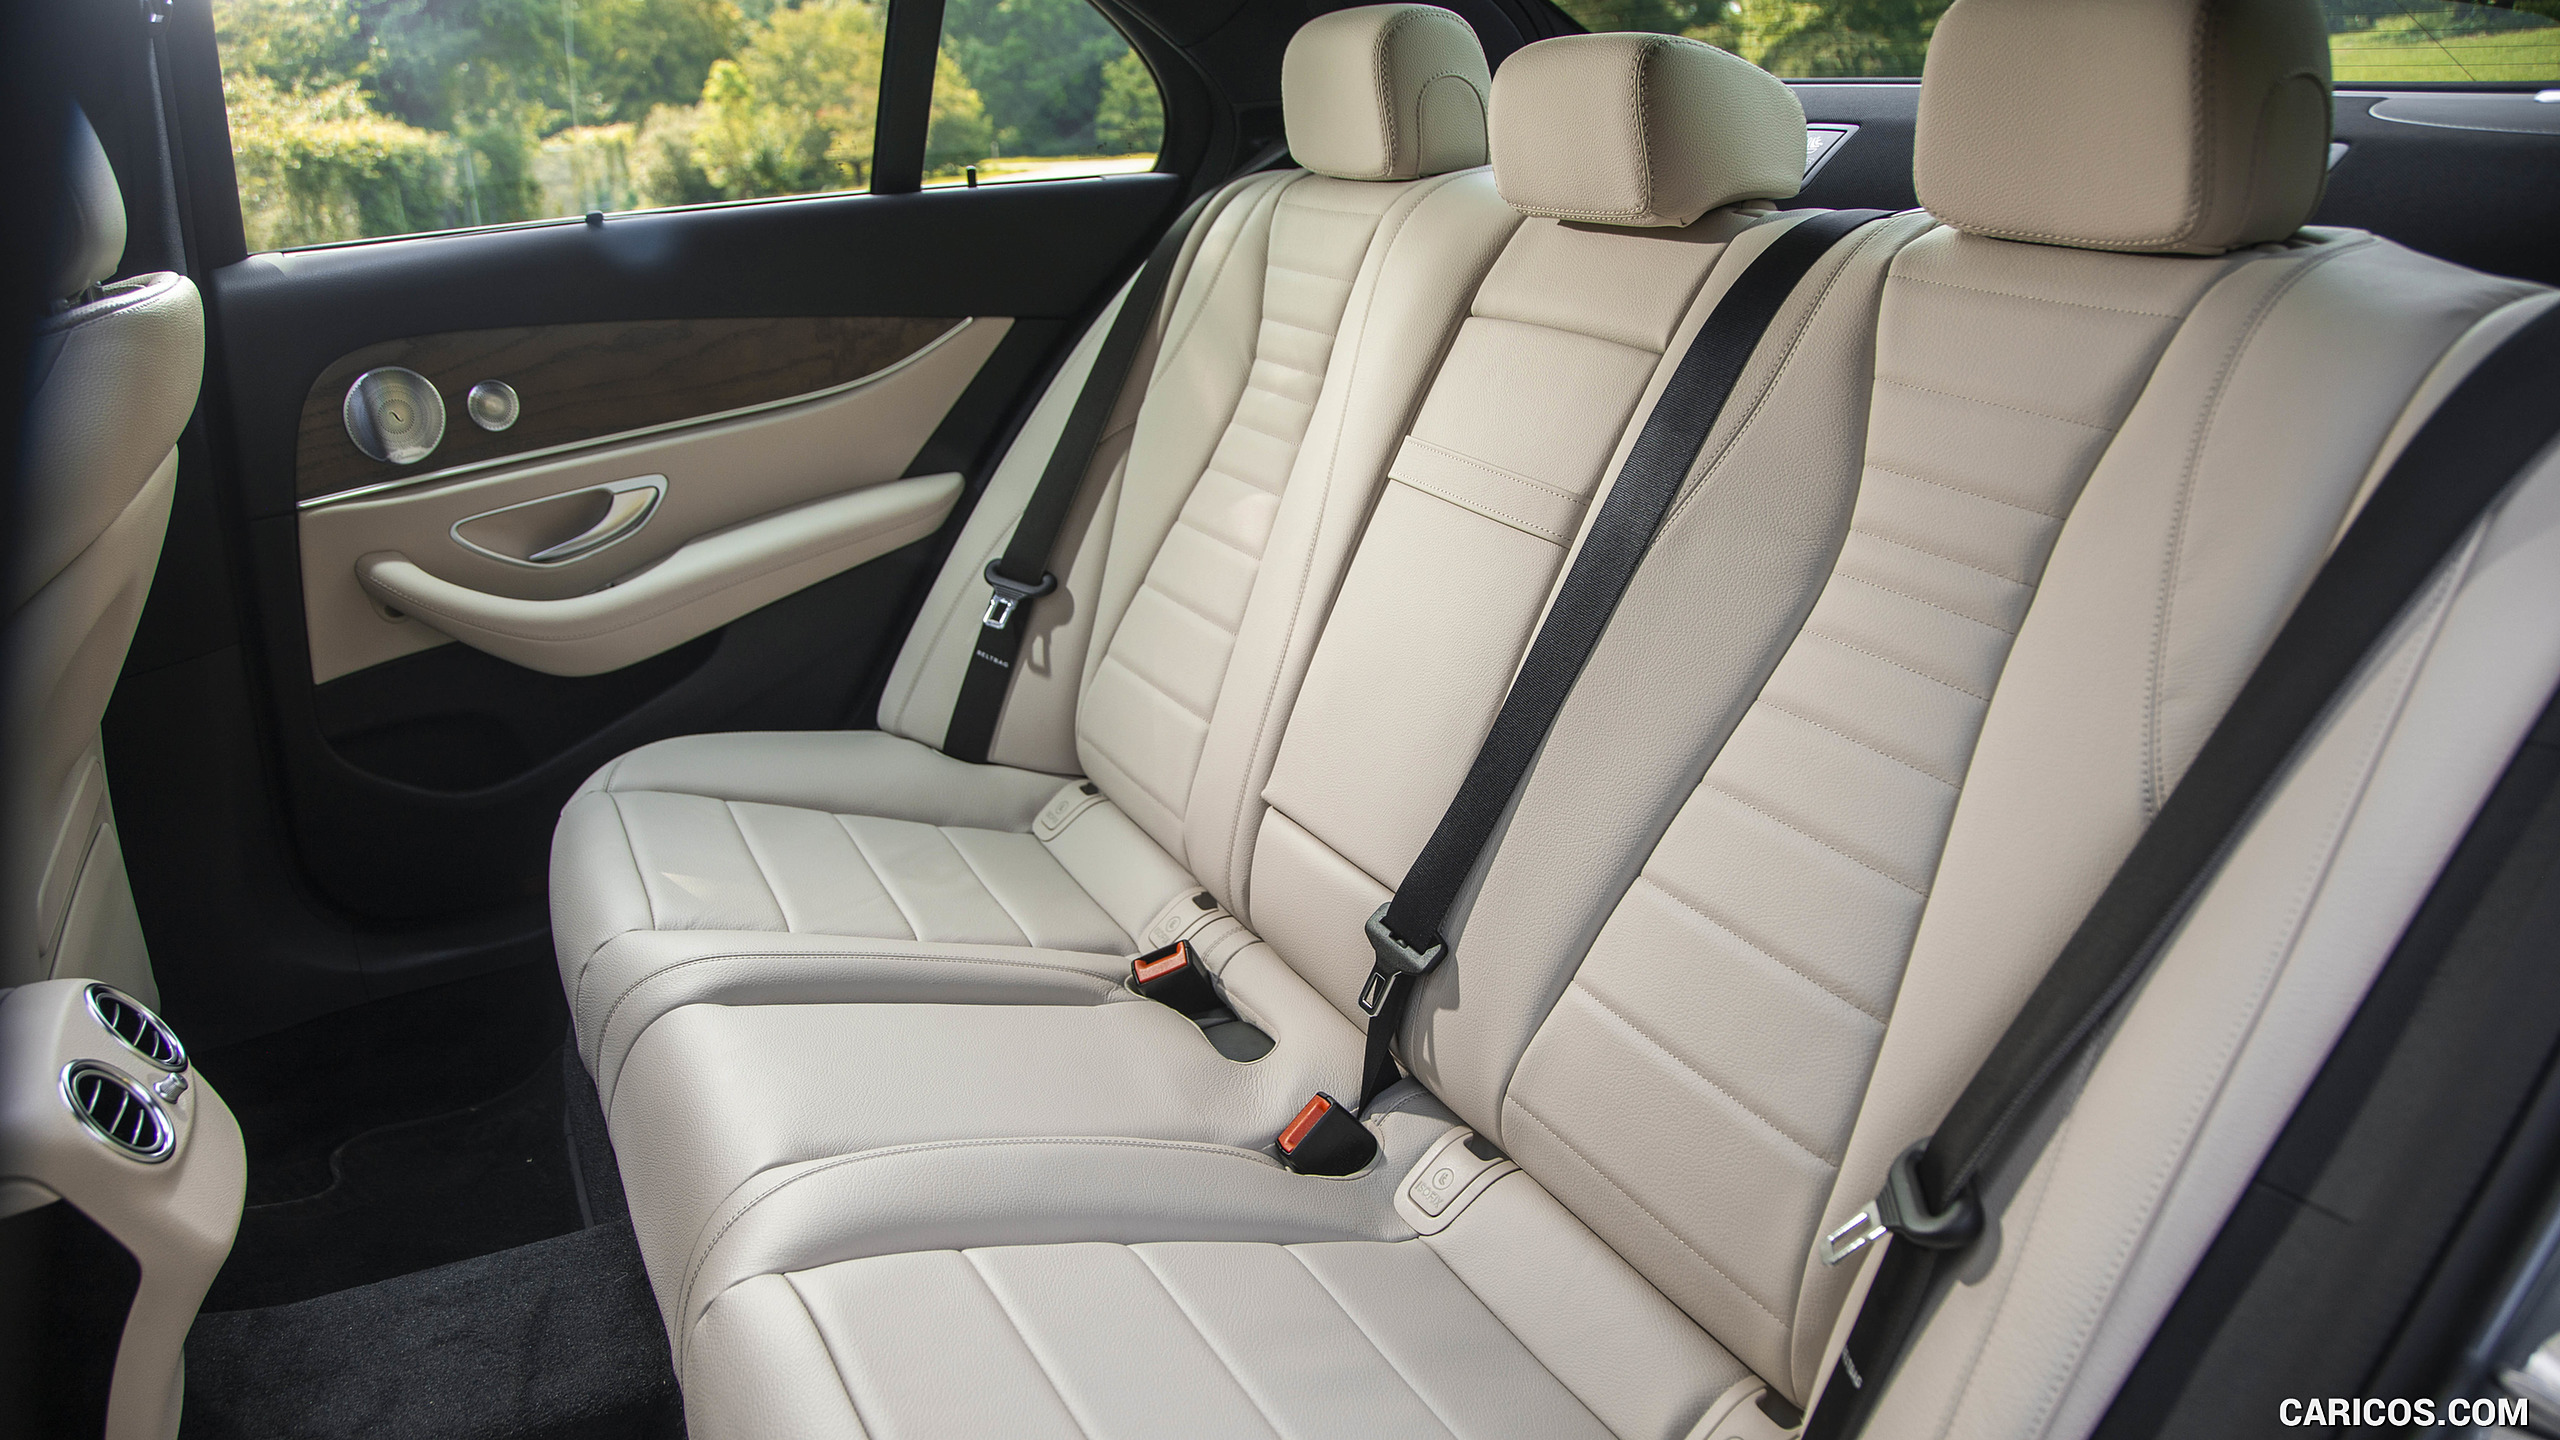 2019 Mercedes-Benz E450 4MATIC E-Class Sedan (US-Spec) - Interior, Rear Seats, #62 of 62